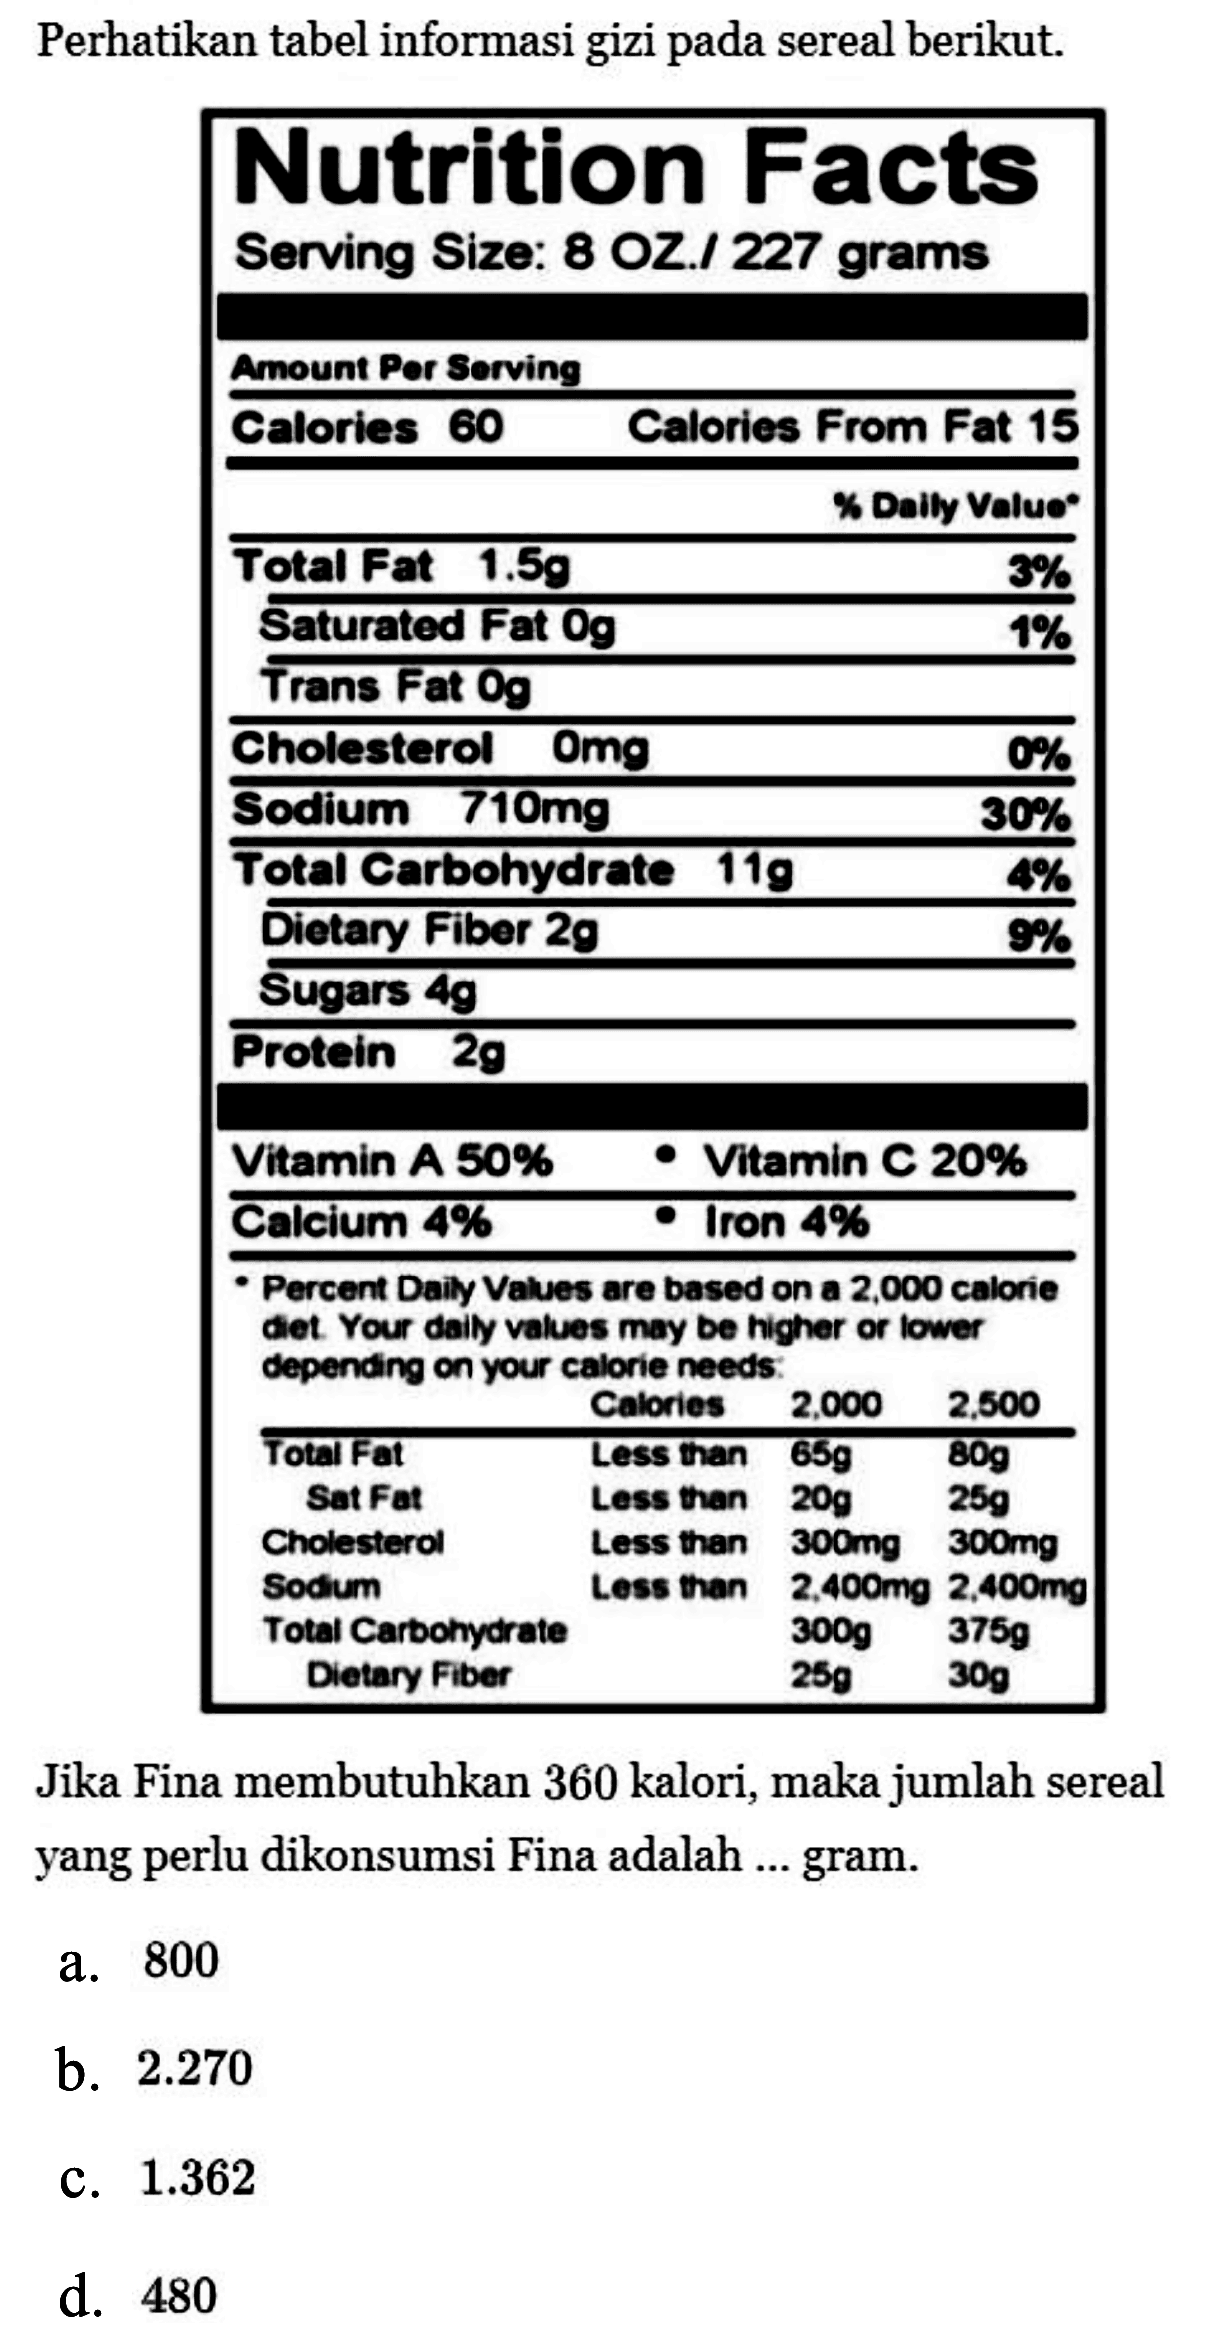 Perhatikan tabel informasi gizi pada sereal berikut. Jika Fina membutuhkan 360 kalori, maka jumlah sereal yang perlu dikonsumsi Fina adalah ... gram